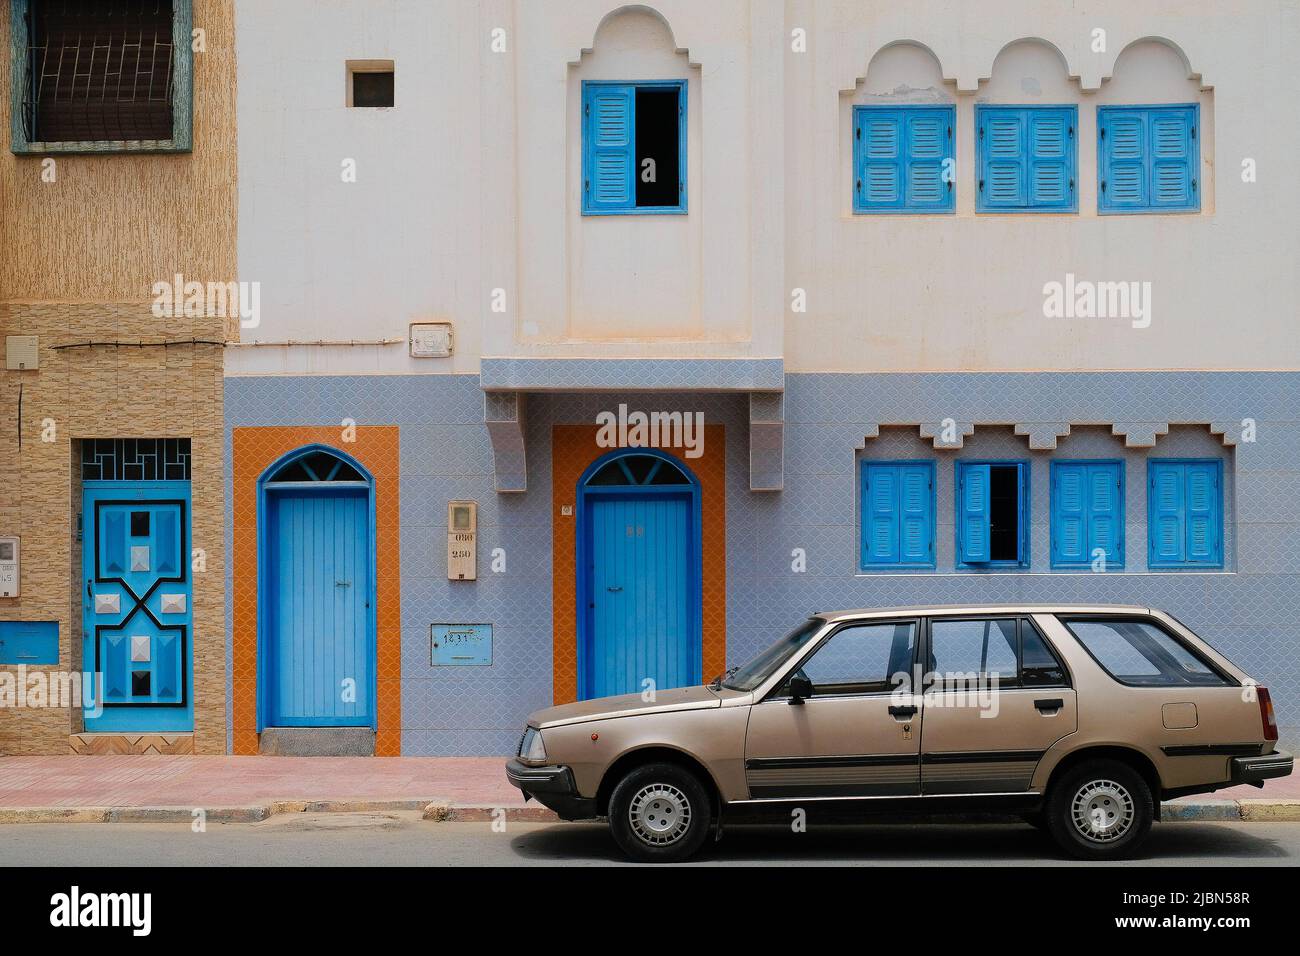 Sidi Ifni, Maroc : wagon de gare d'époque stationné devant un bâtiment avec des portes et des fenêtres colorées dans un mélange de design marocain et espagnol. Banque D'Images